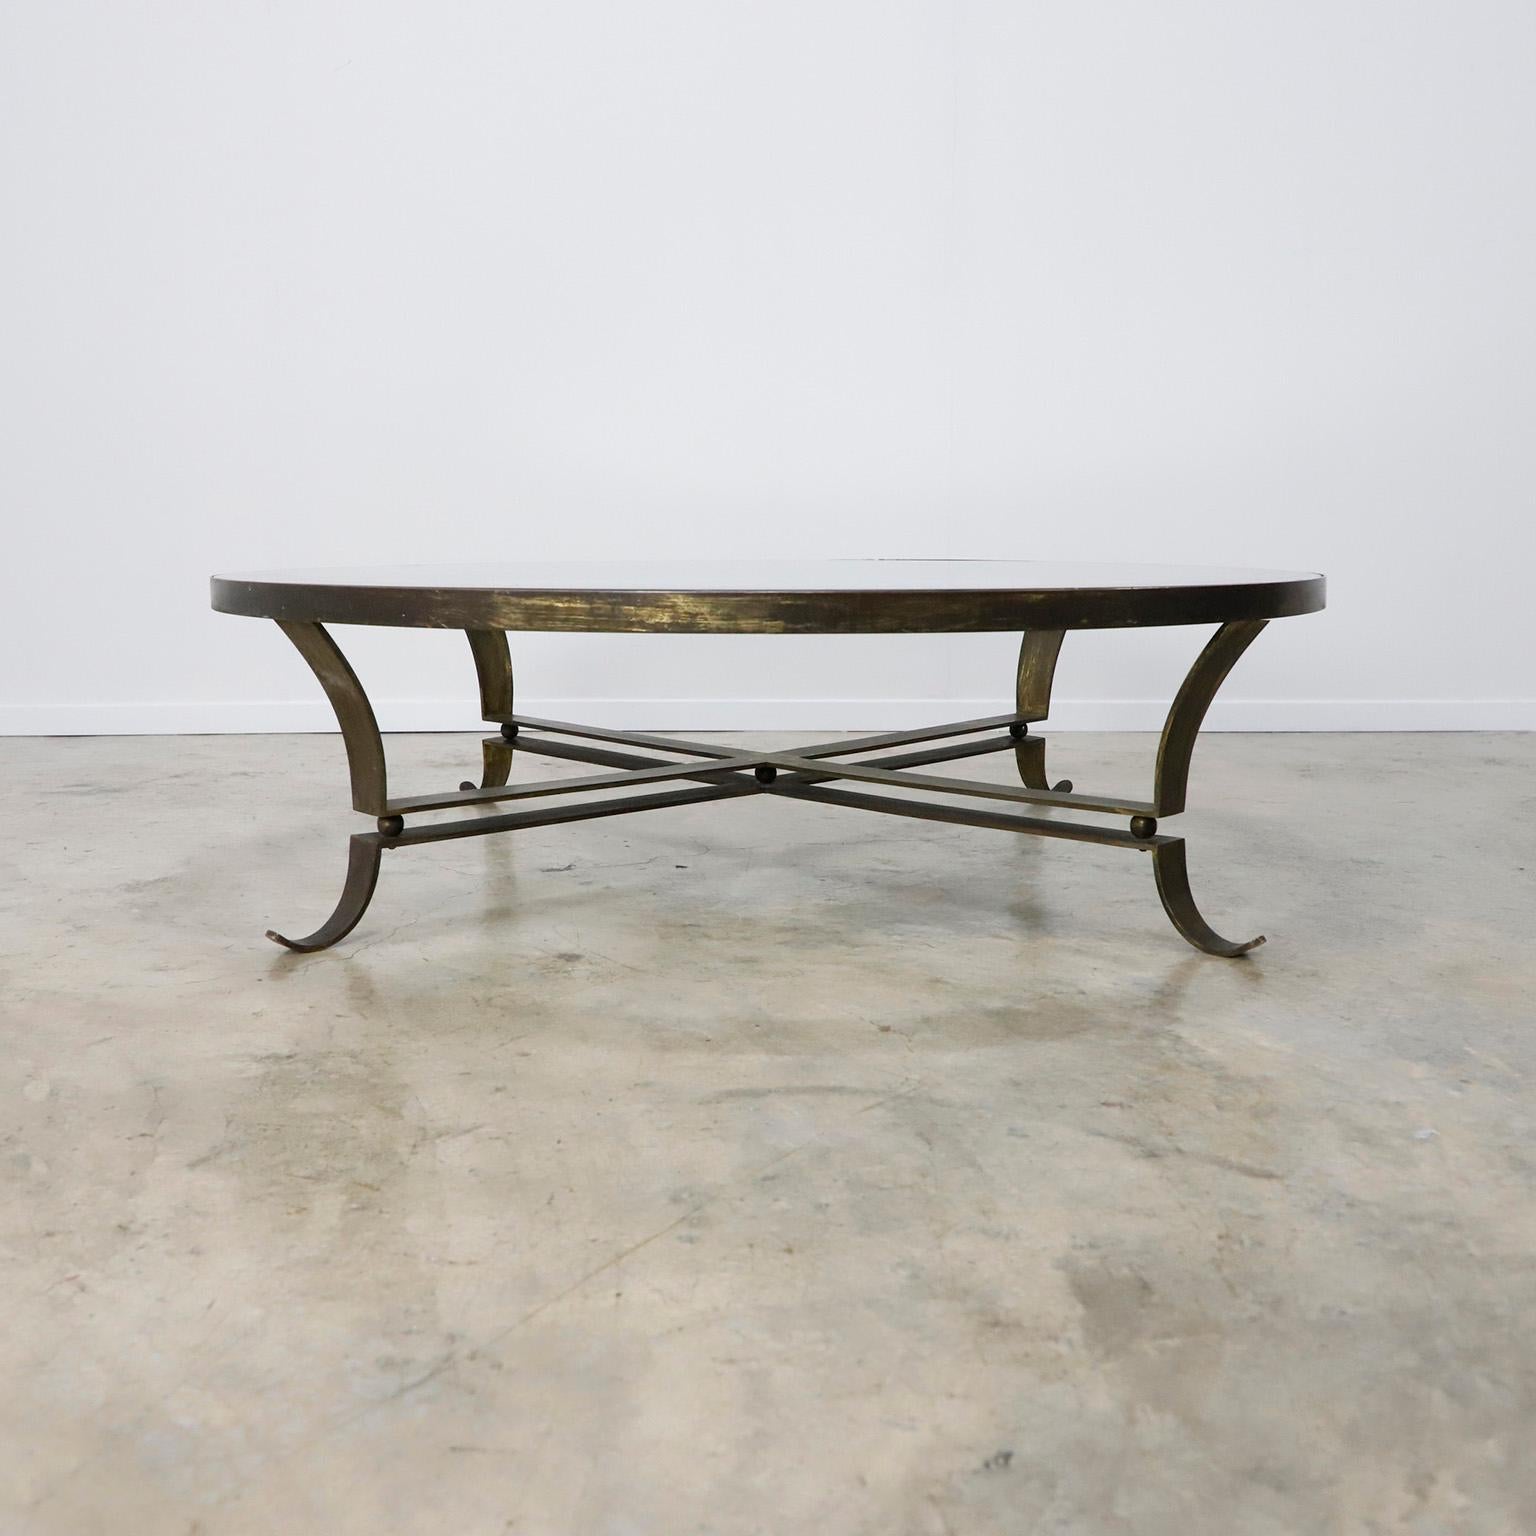 Der von Arturo Pani entworfene Tisch wurde in Mexiko in den 1950er Jahren hergestellt. Der Tisch hat ein originales Spiegelglas und einen massiven Messingfuß.